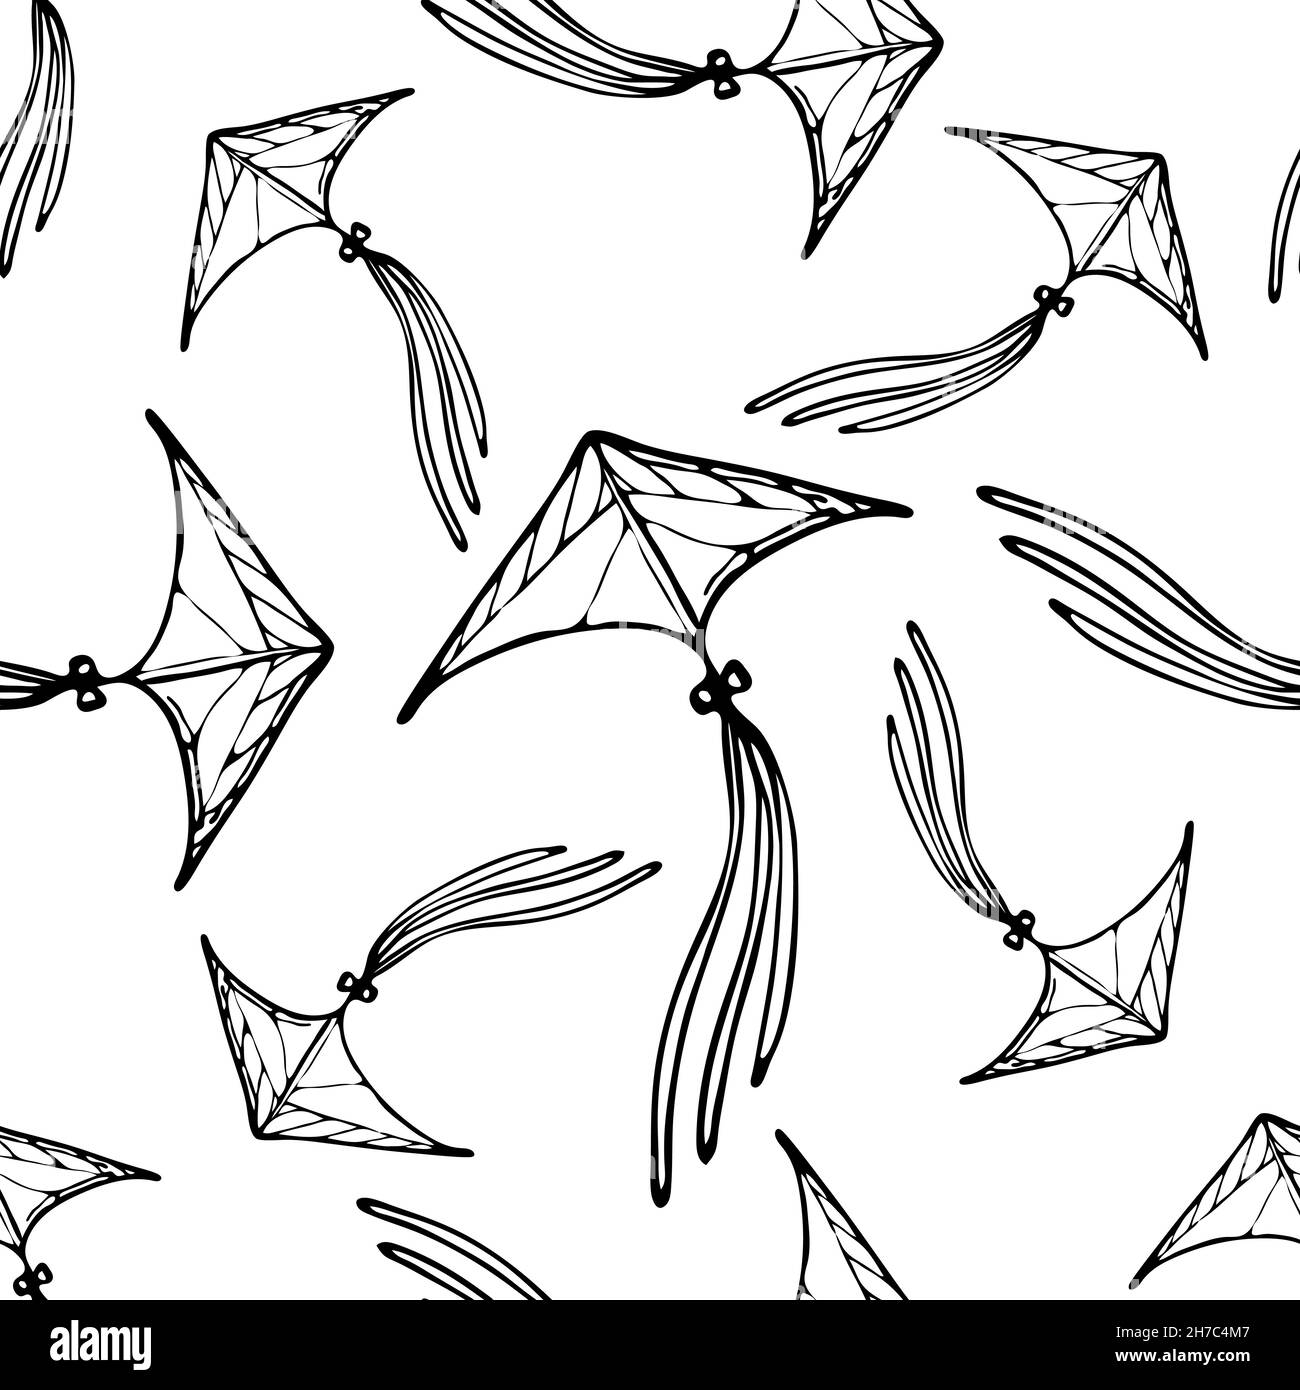 Cerf-volant à motif vectoriel kite, dessiné à la main, minimaliste, monochrome.Arrière-plan noir et blanc Illustration de Vecteur